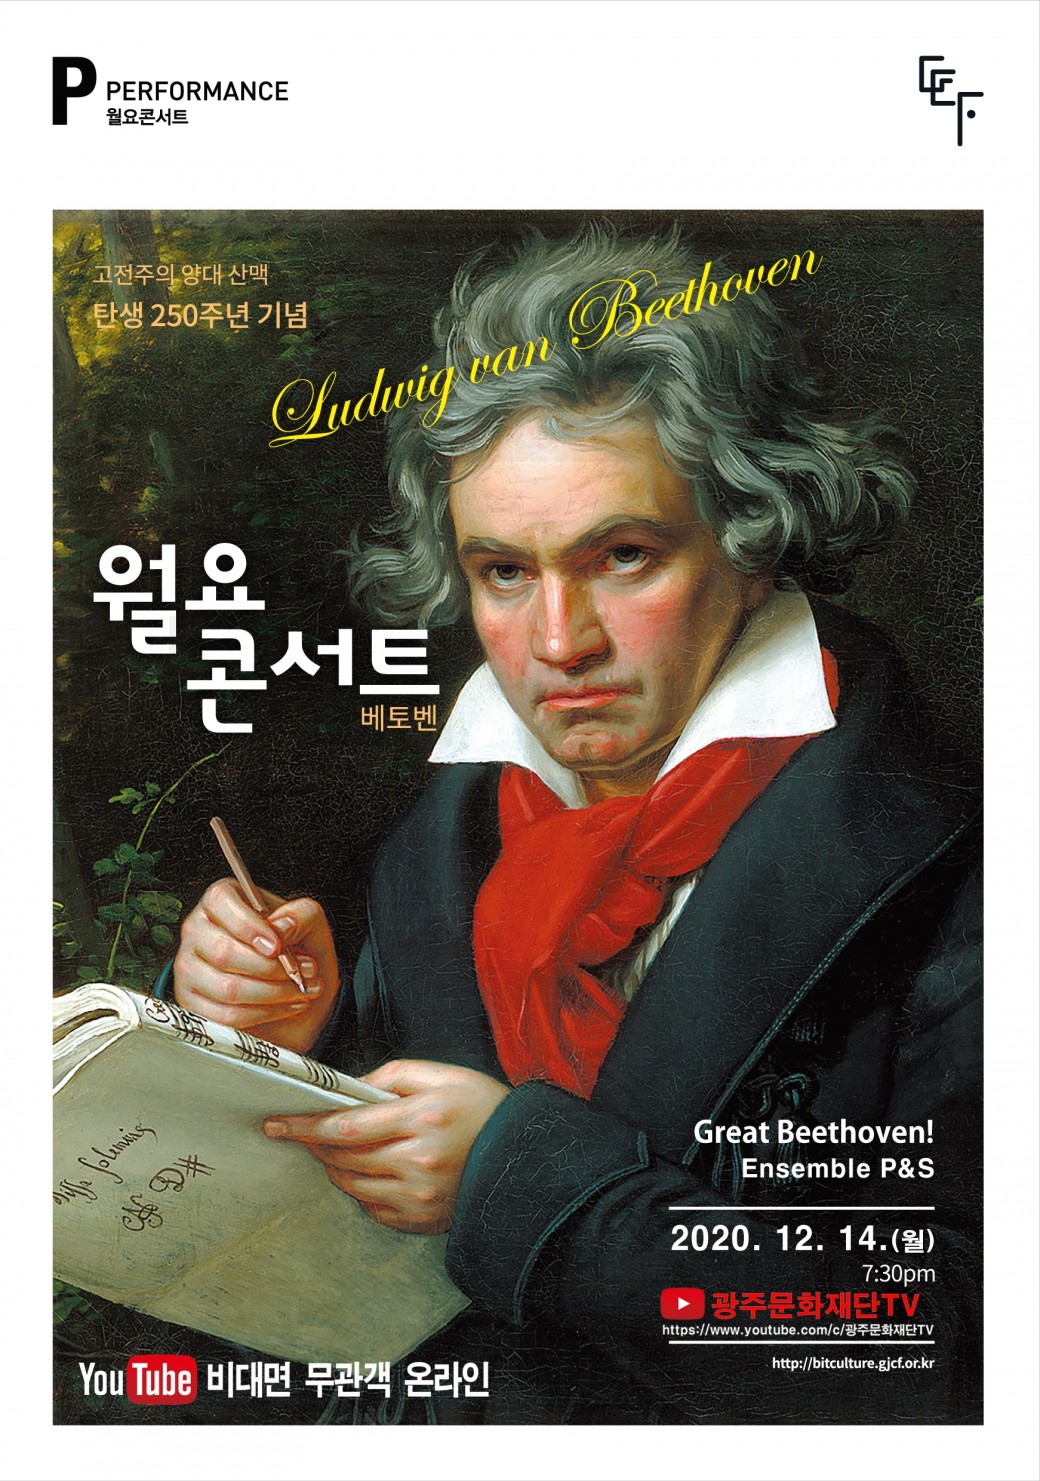 월요콘서트 10회차 "베토벤 탄생 250주년 기념 Great Beethoven!"